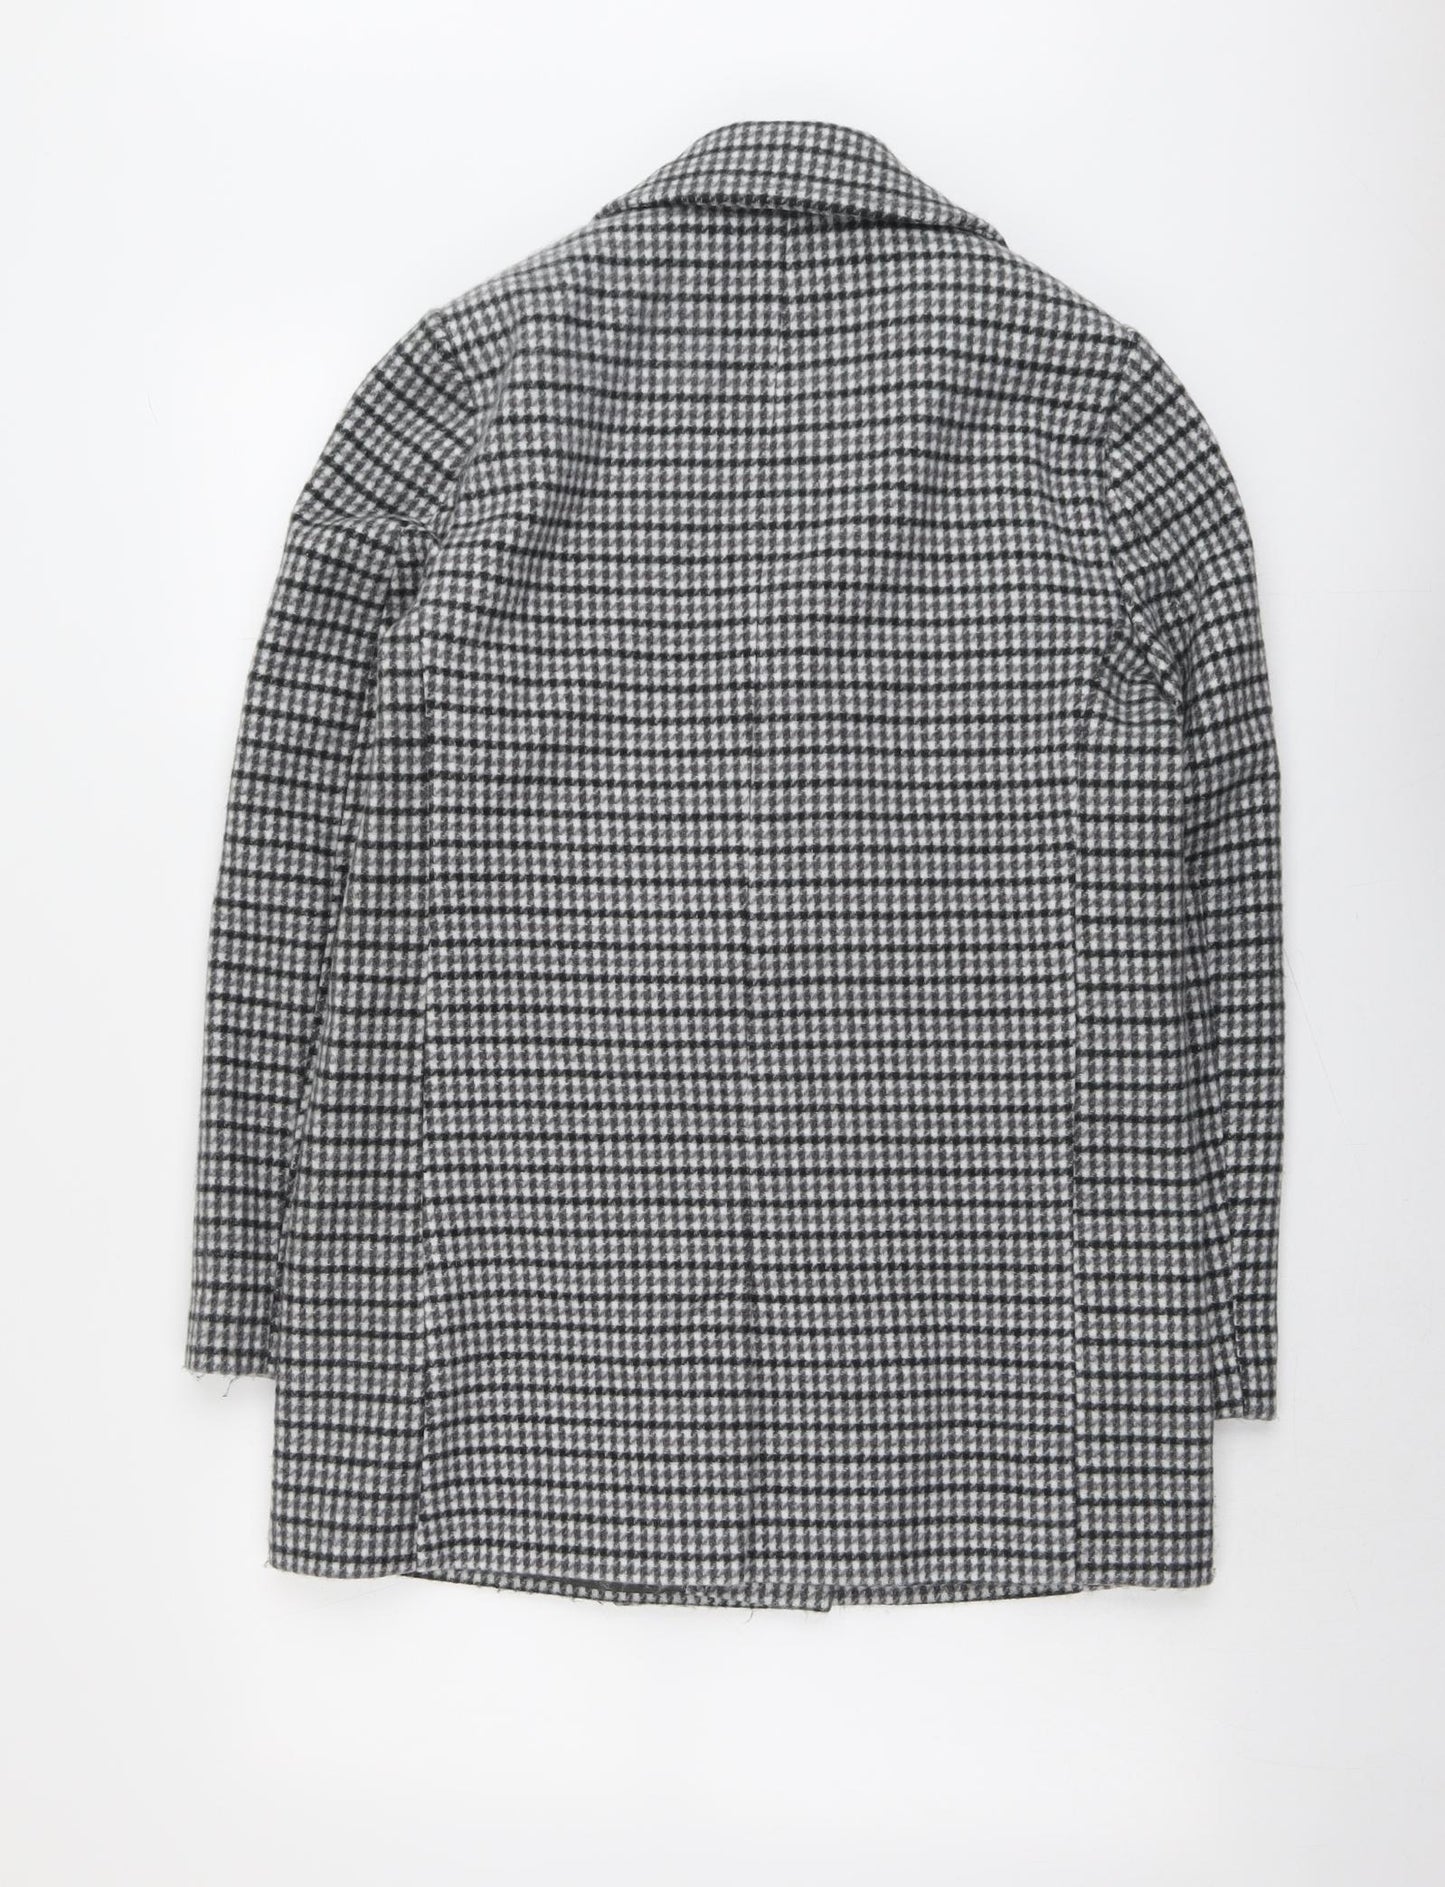 Marks and Spencer Womens Grey Geometric Jacket Blazer Size 10 Button